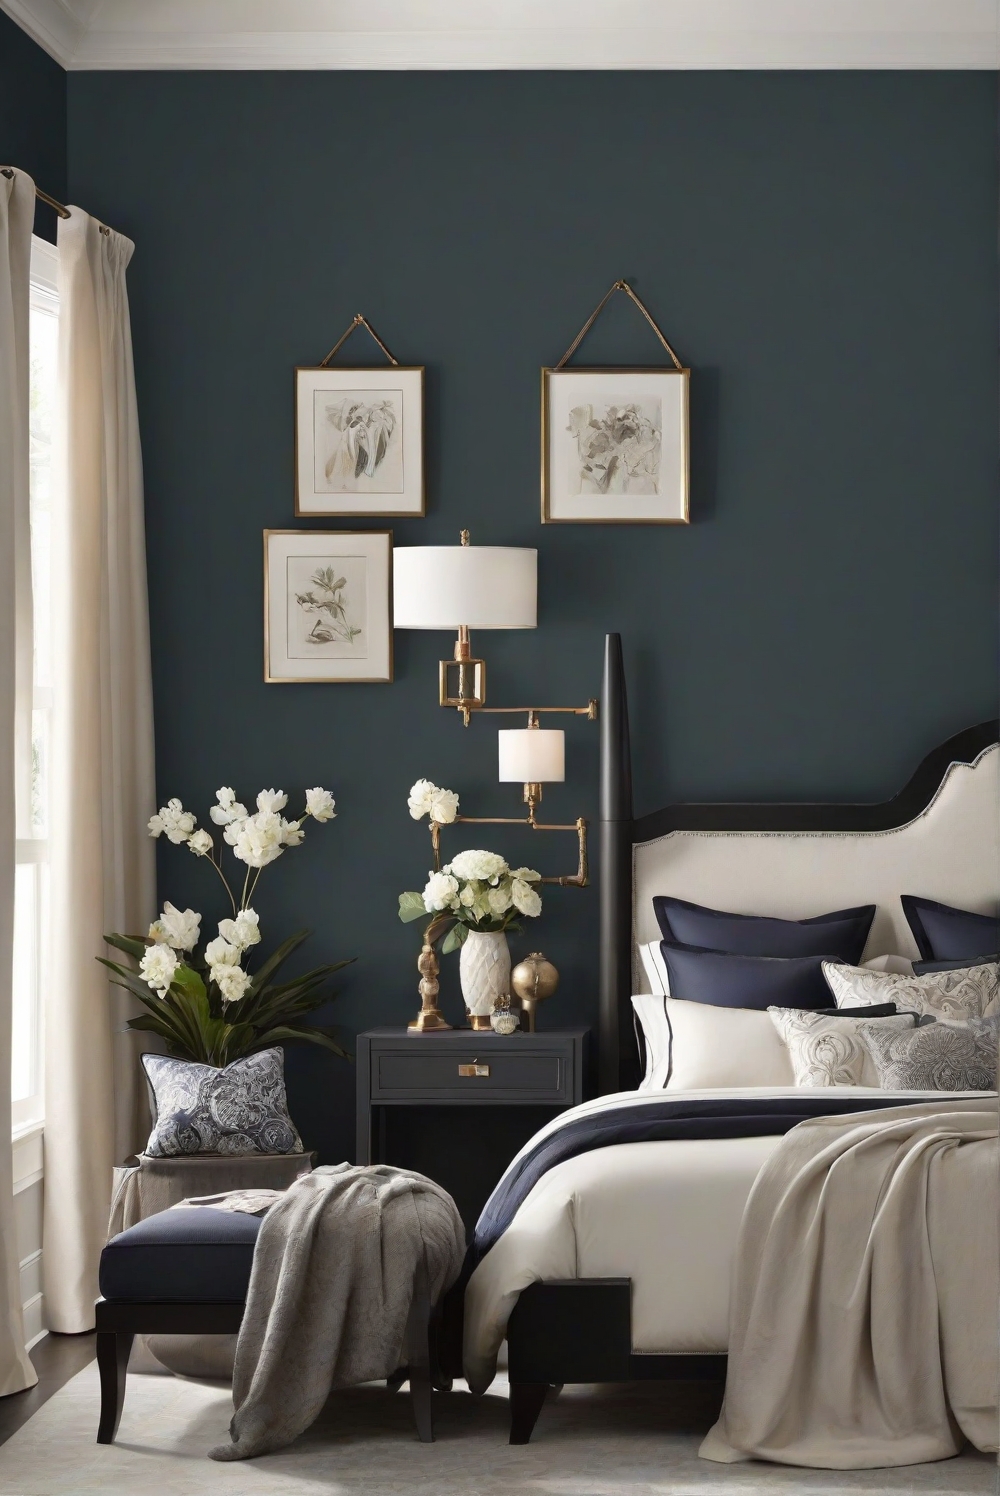 Salute SW 7582, elegant bedroom decor, sophisticated bedroom design, refined bedroom interior, luxury bedroom design, elegant bedroom paint colors, elegant bedroom furniture